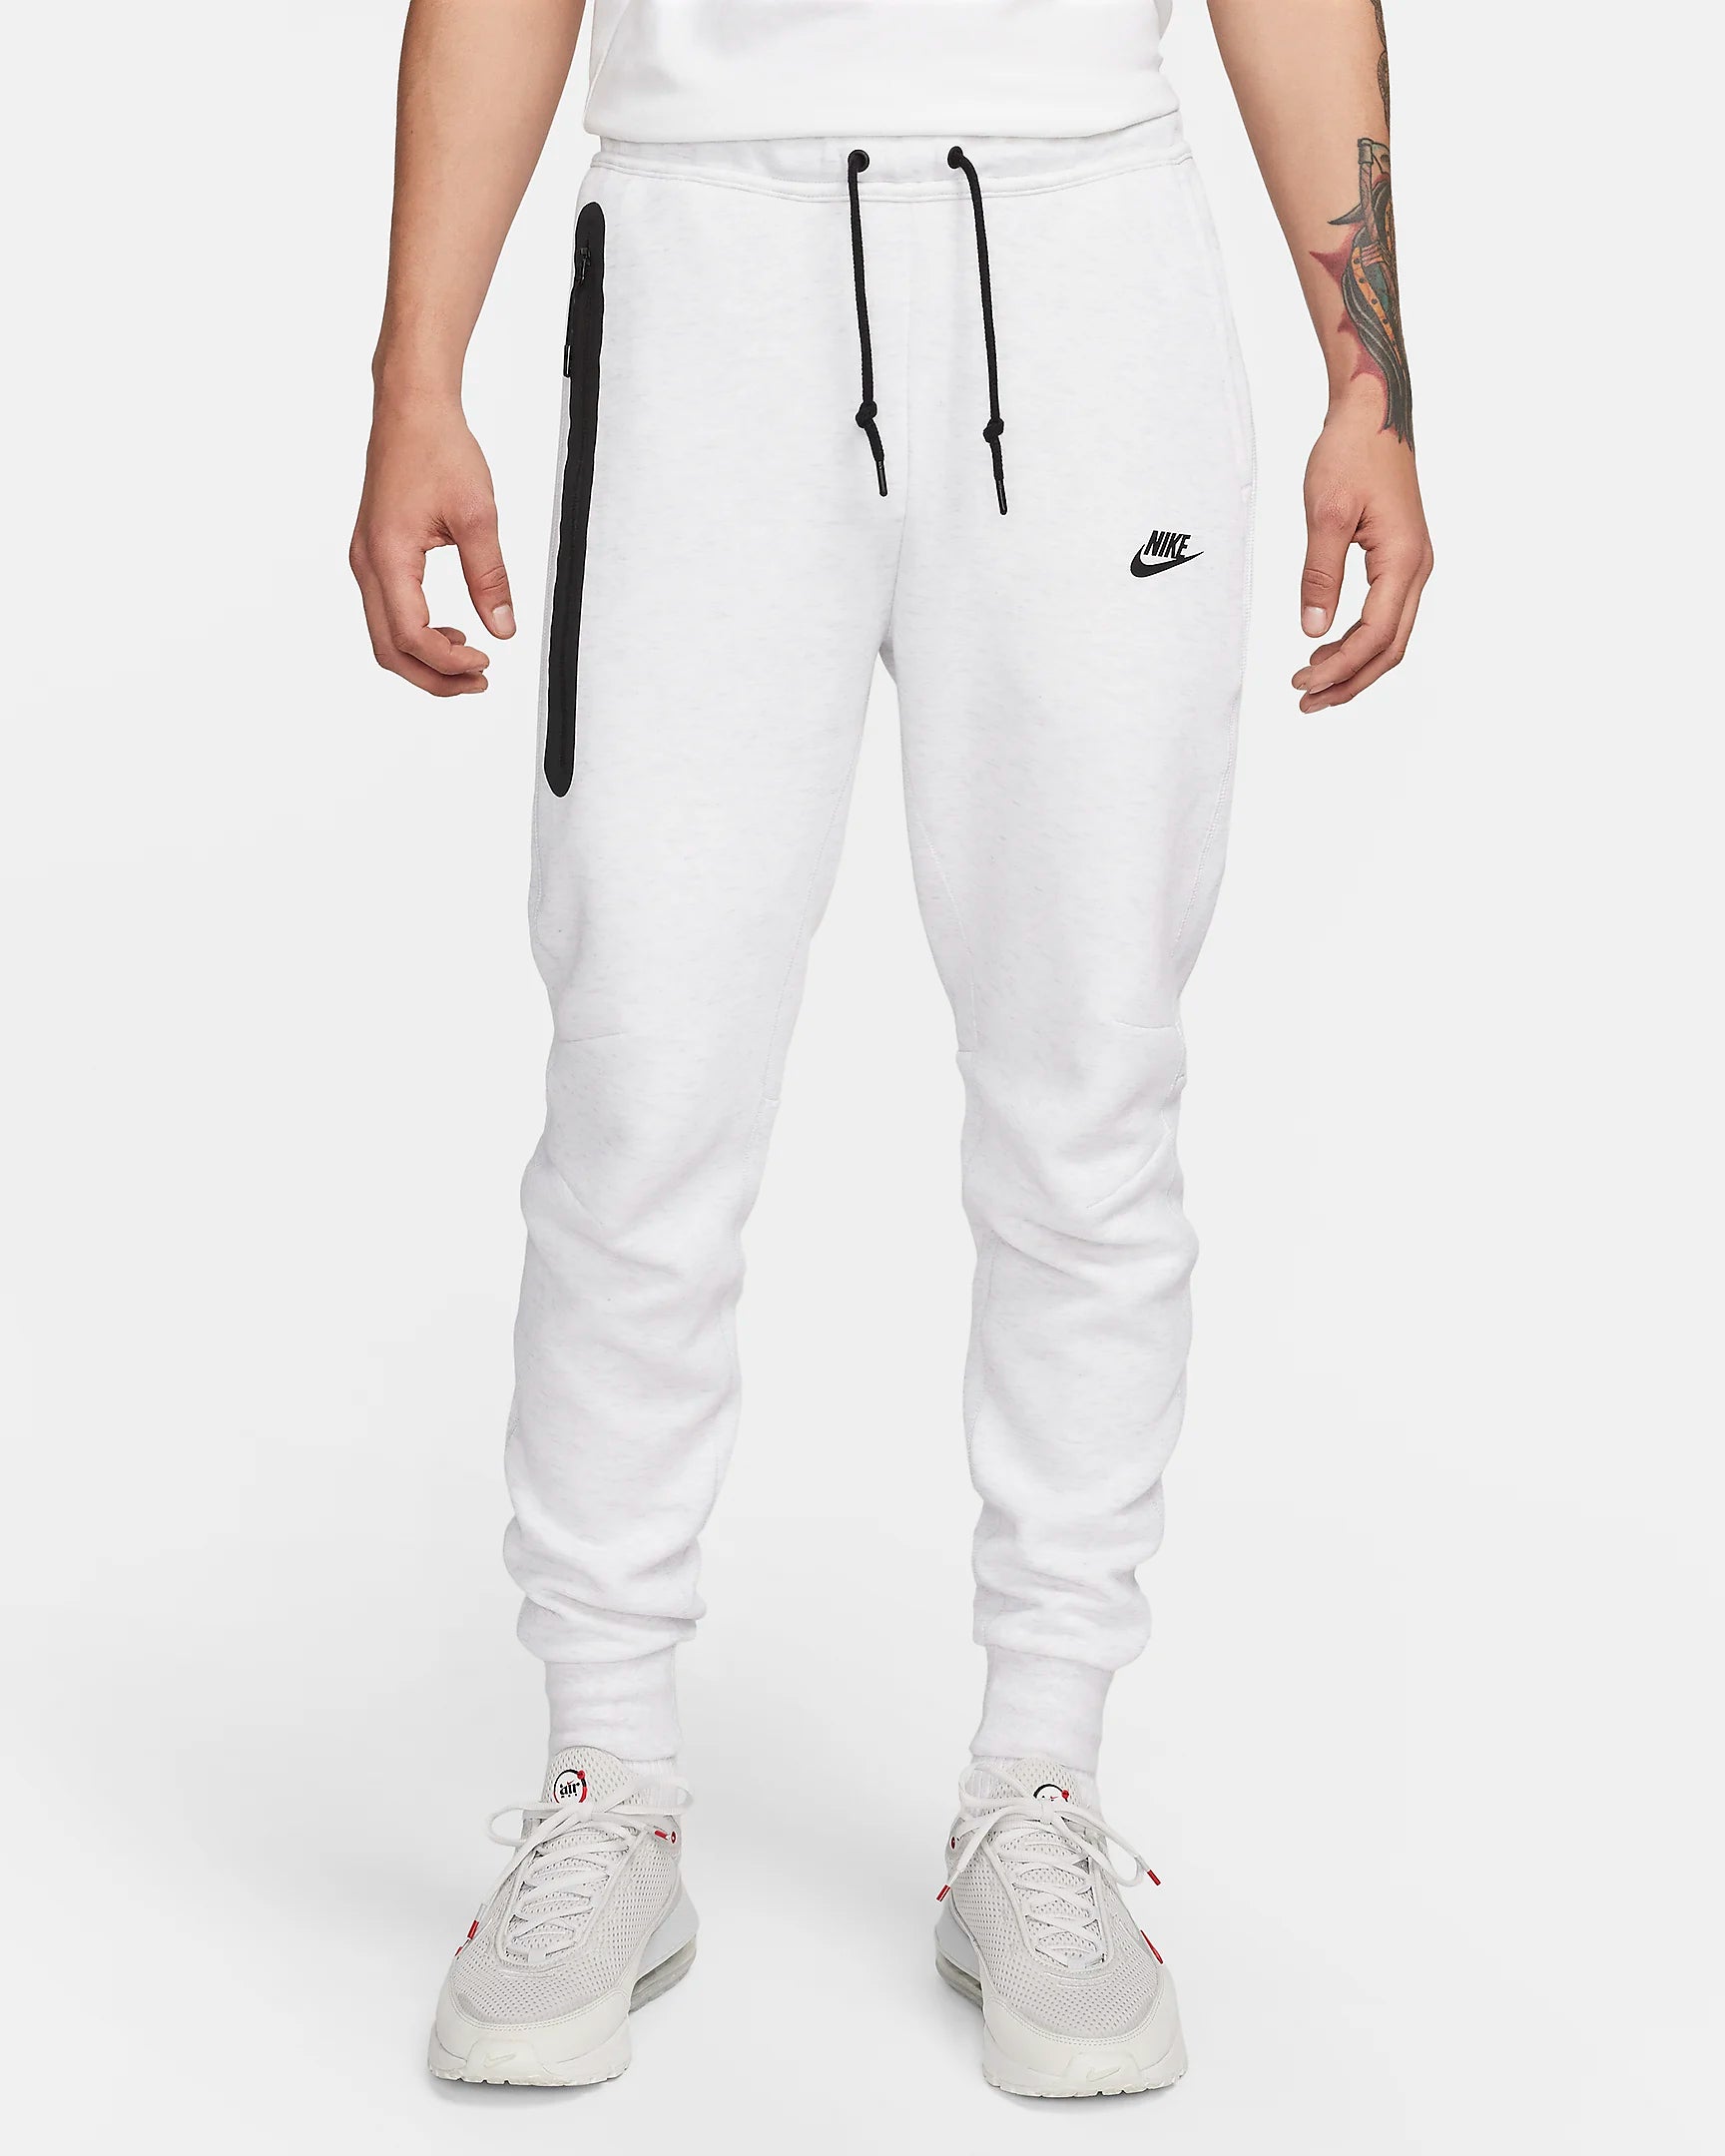 Pantalon Nike Tech Fleece – Grau/Schwarz